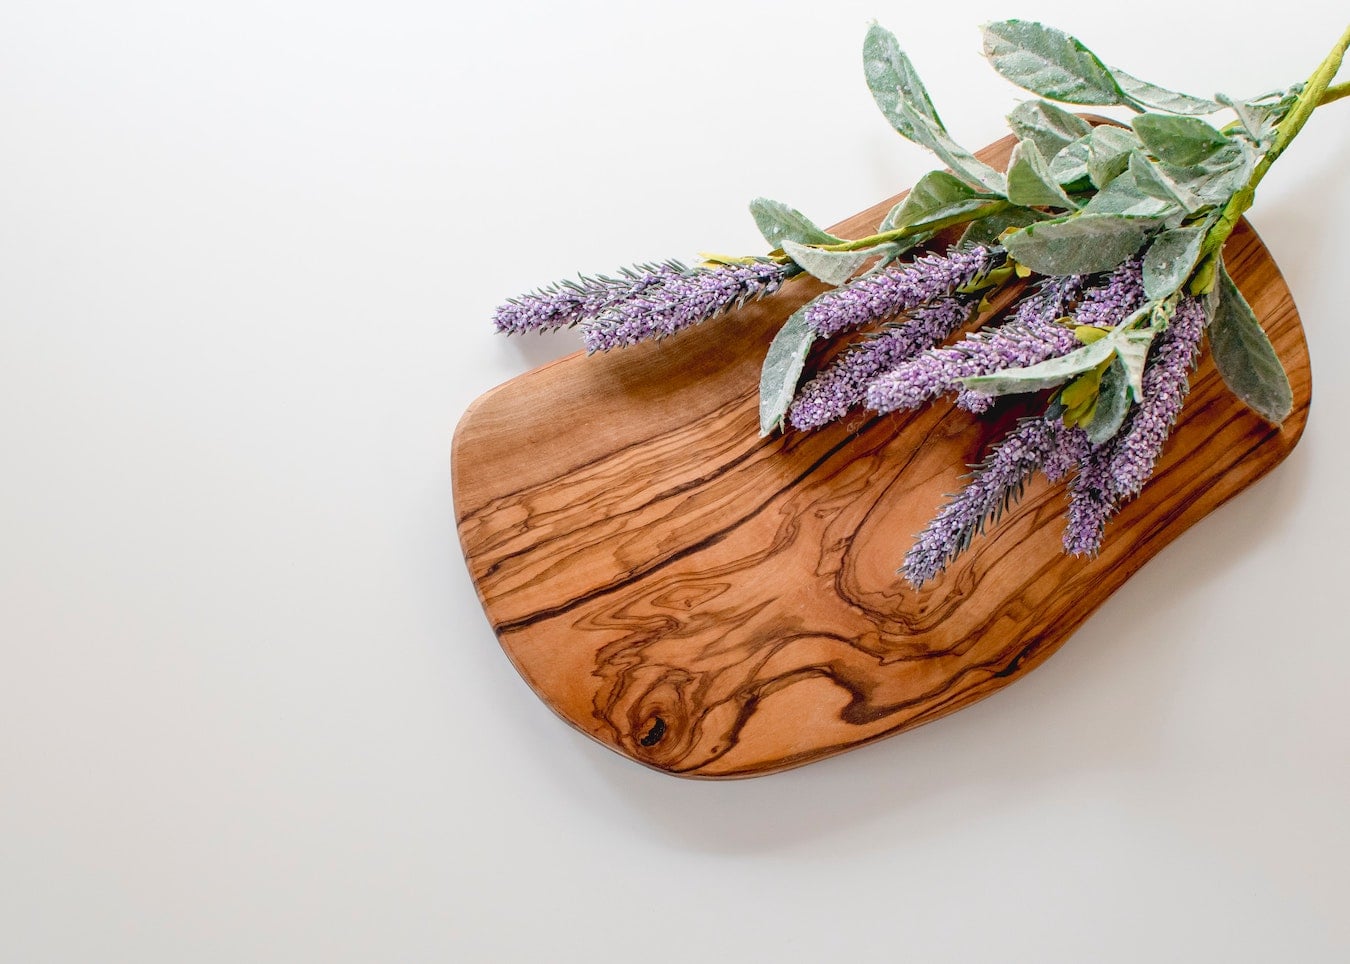 Lavendel liegt auf einem Holzbrett